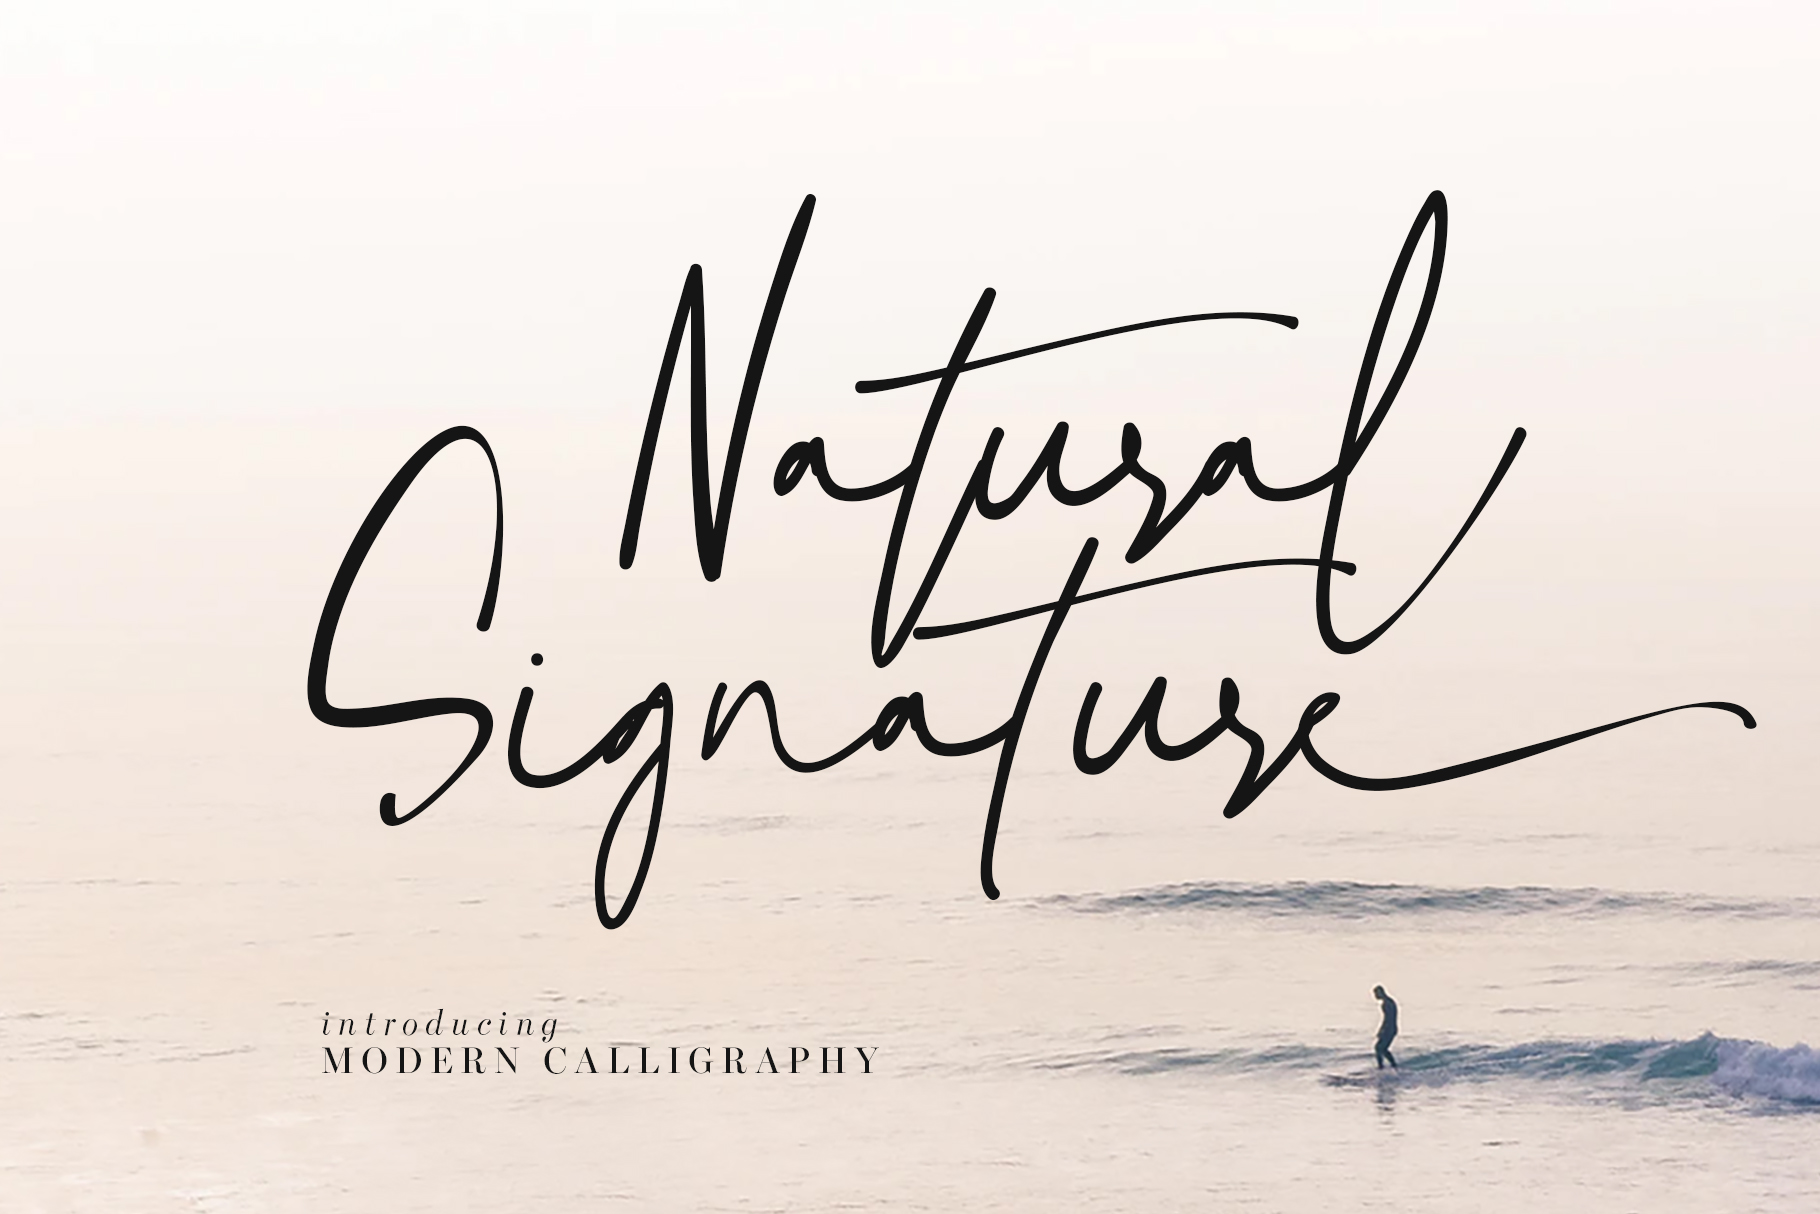 Natural Signature